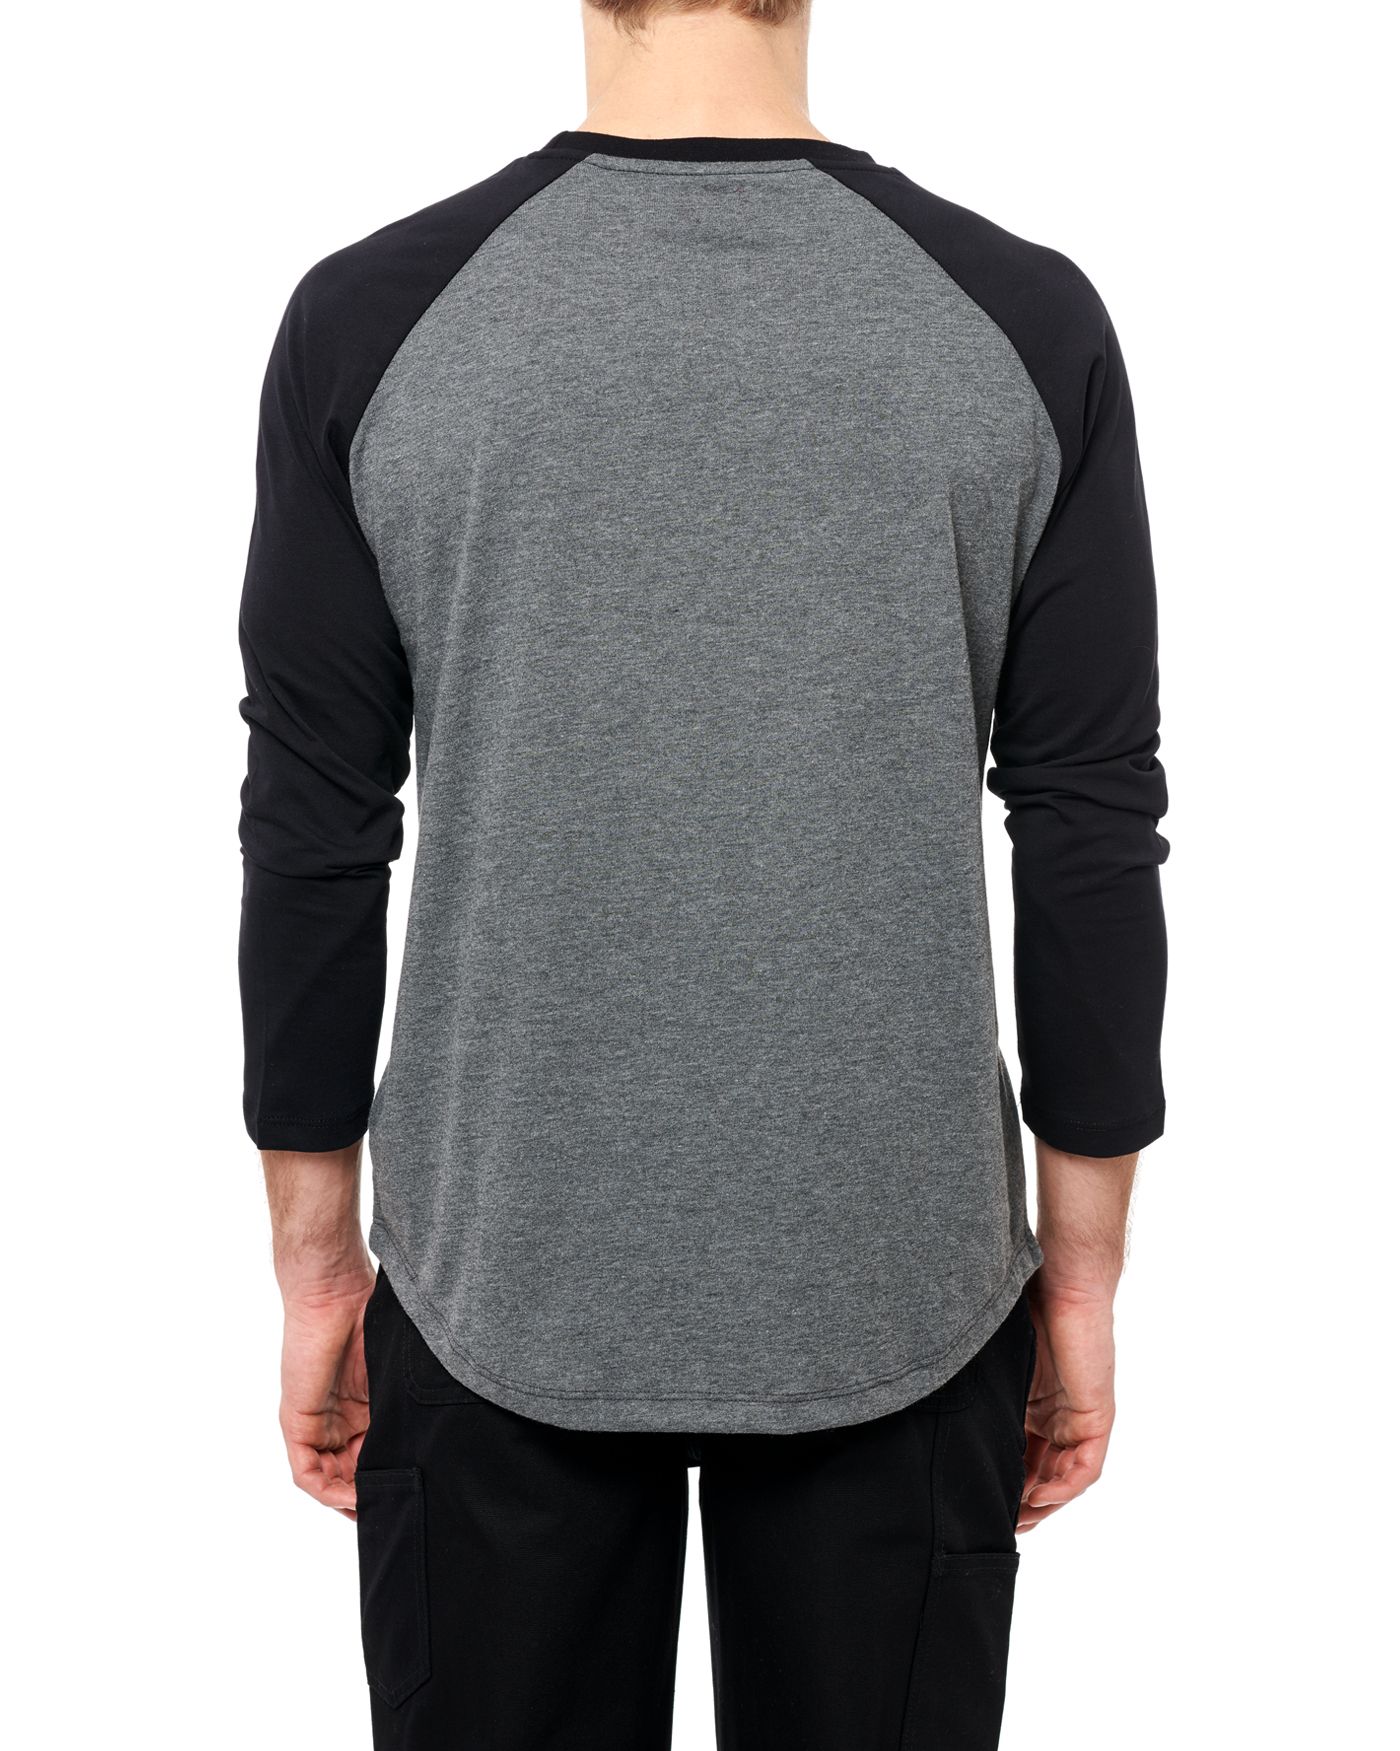 Photo of Nothing Man 3/4 Raglan T-shirt, Grey Melange